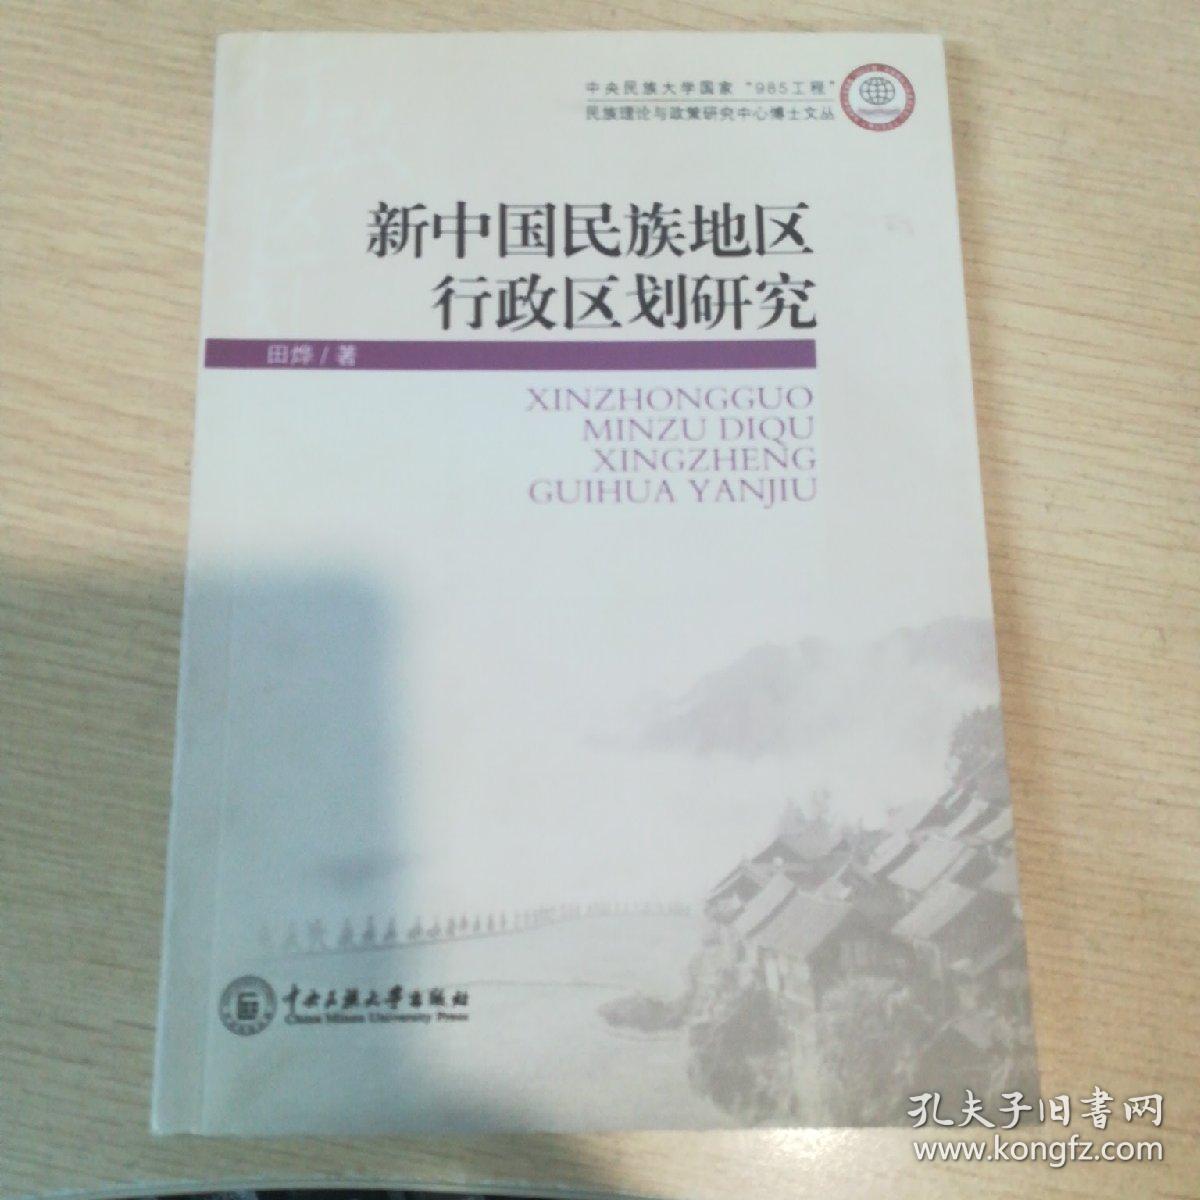 新中国民族地区行政区划研究